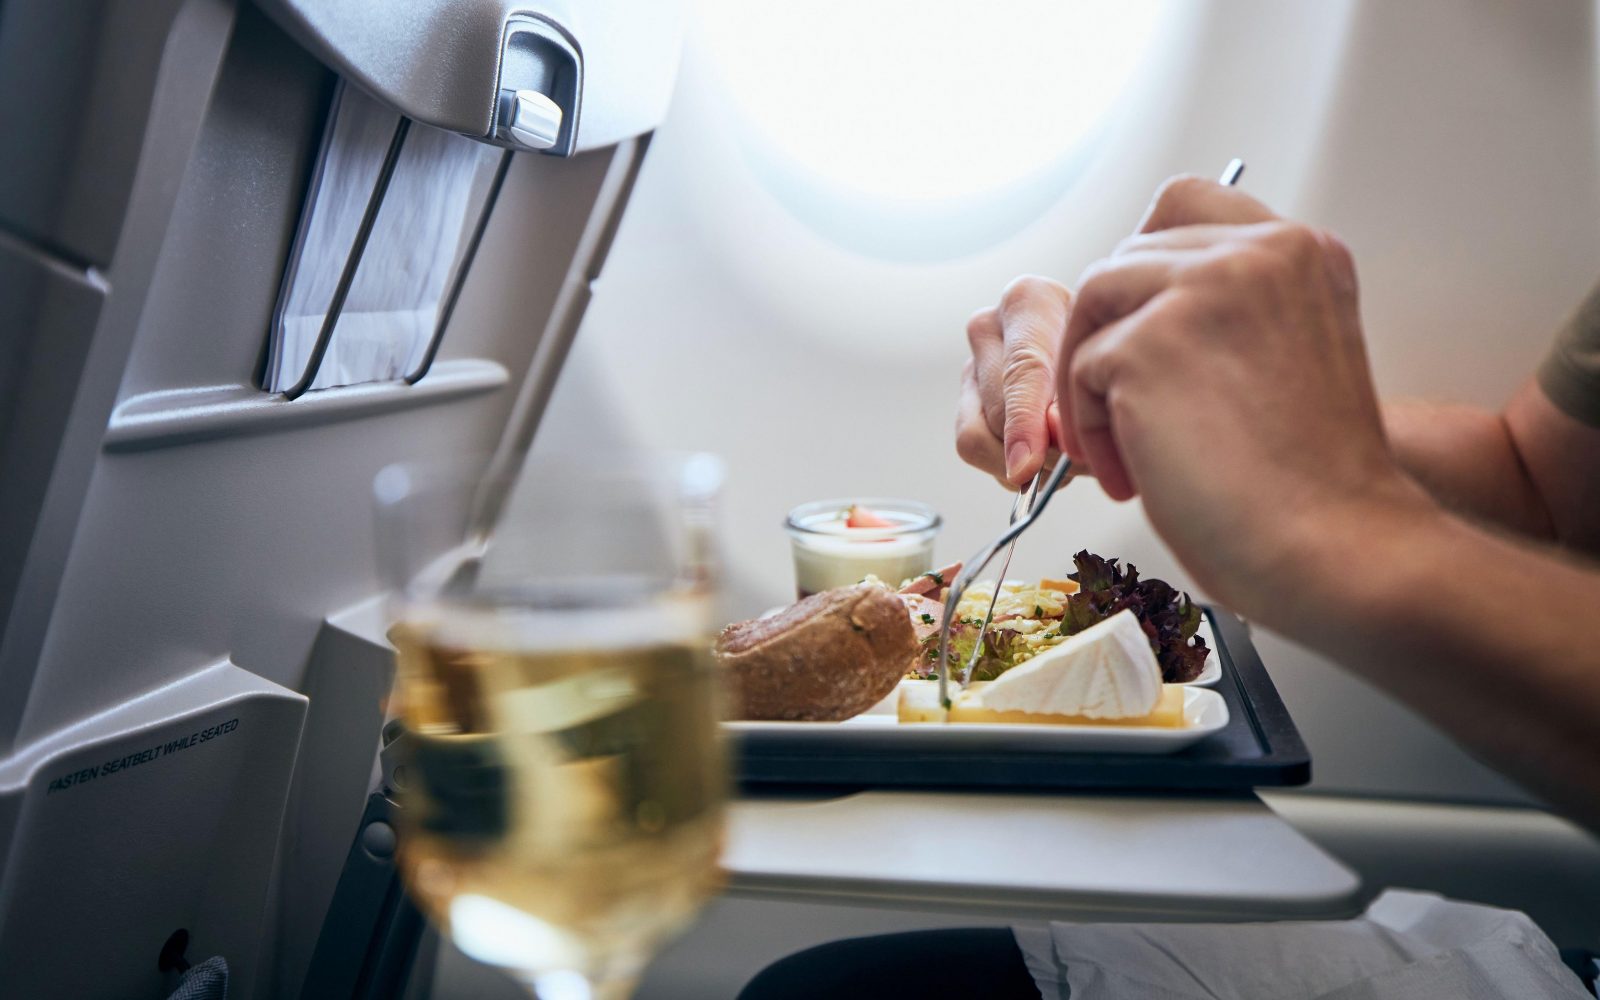 Fotografija prikazuje potnika, ki uživa obrok na letalu. Na pladnju je več jedi, vključno s kruhom, solato in sirom, ob strani pa je kozarec vina. Prizor poudarja udobje in kakovost storitve med letom, kar je pomembno za potnike na dolgih letih. Ta slika je idealna za članke o potovalnih izkušnjah, letalskih storitvah, nasvetih za potovanja in udobju na letalu.